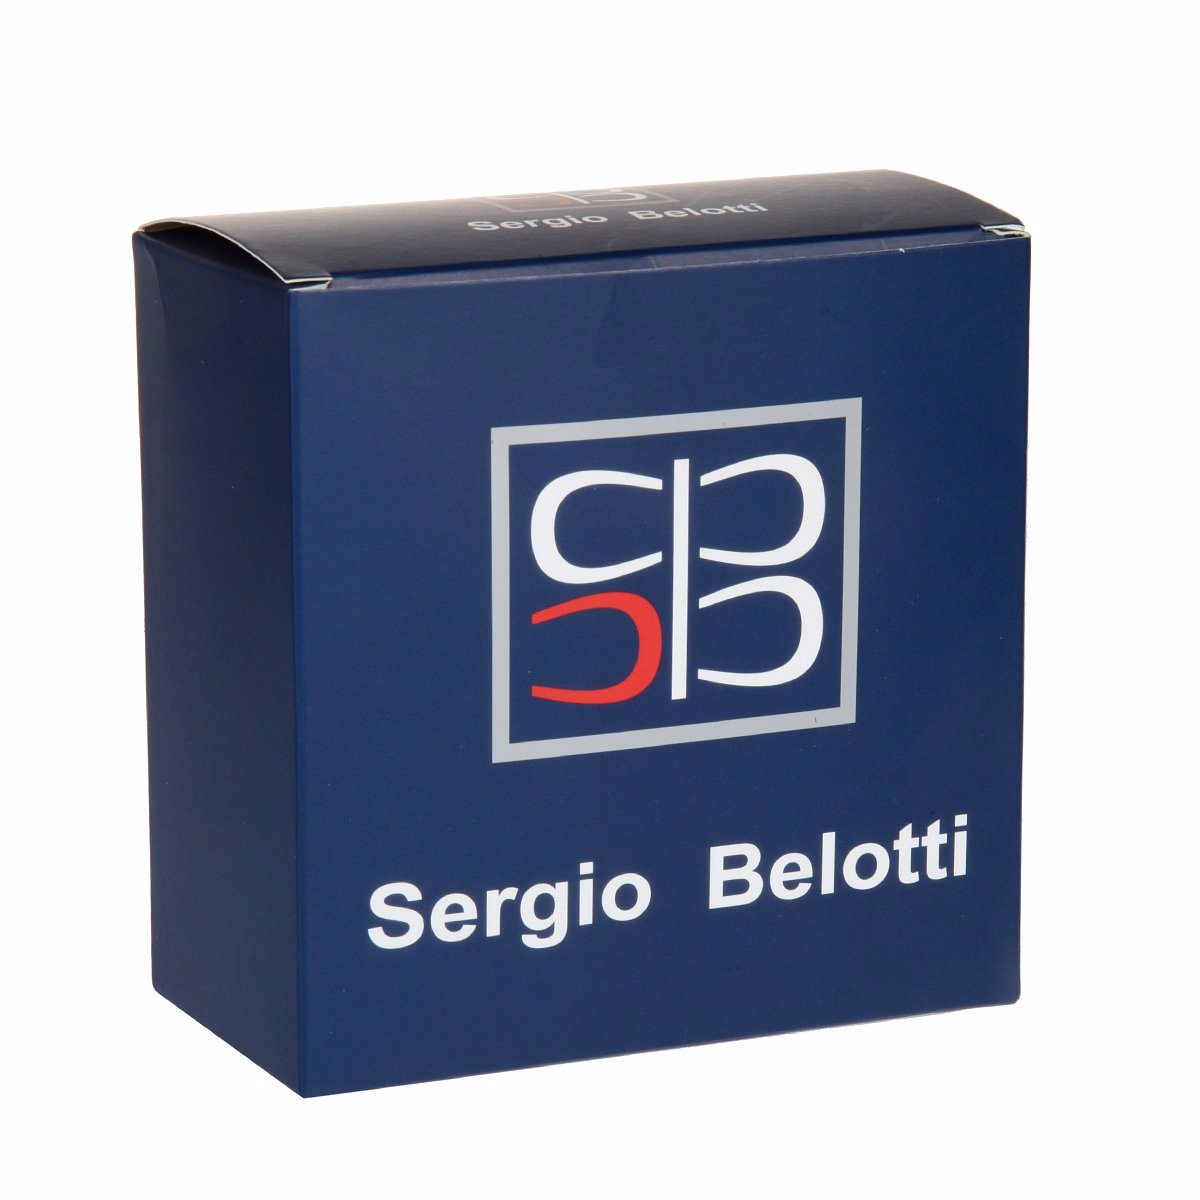 Ремень
Sergio Belotti
6094/35 T.Moro Ремни и пояса